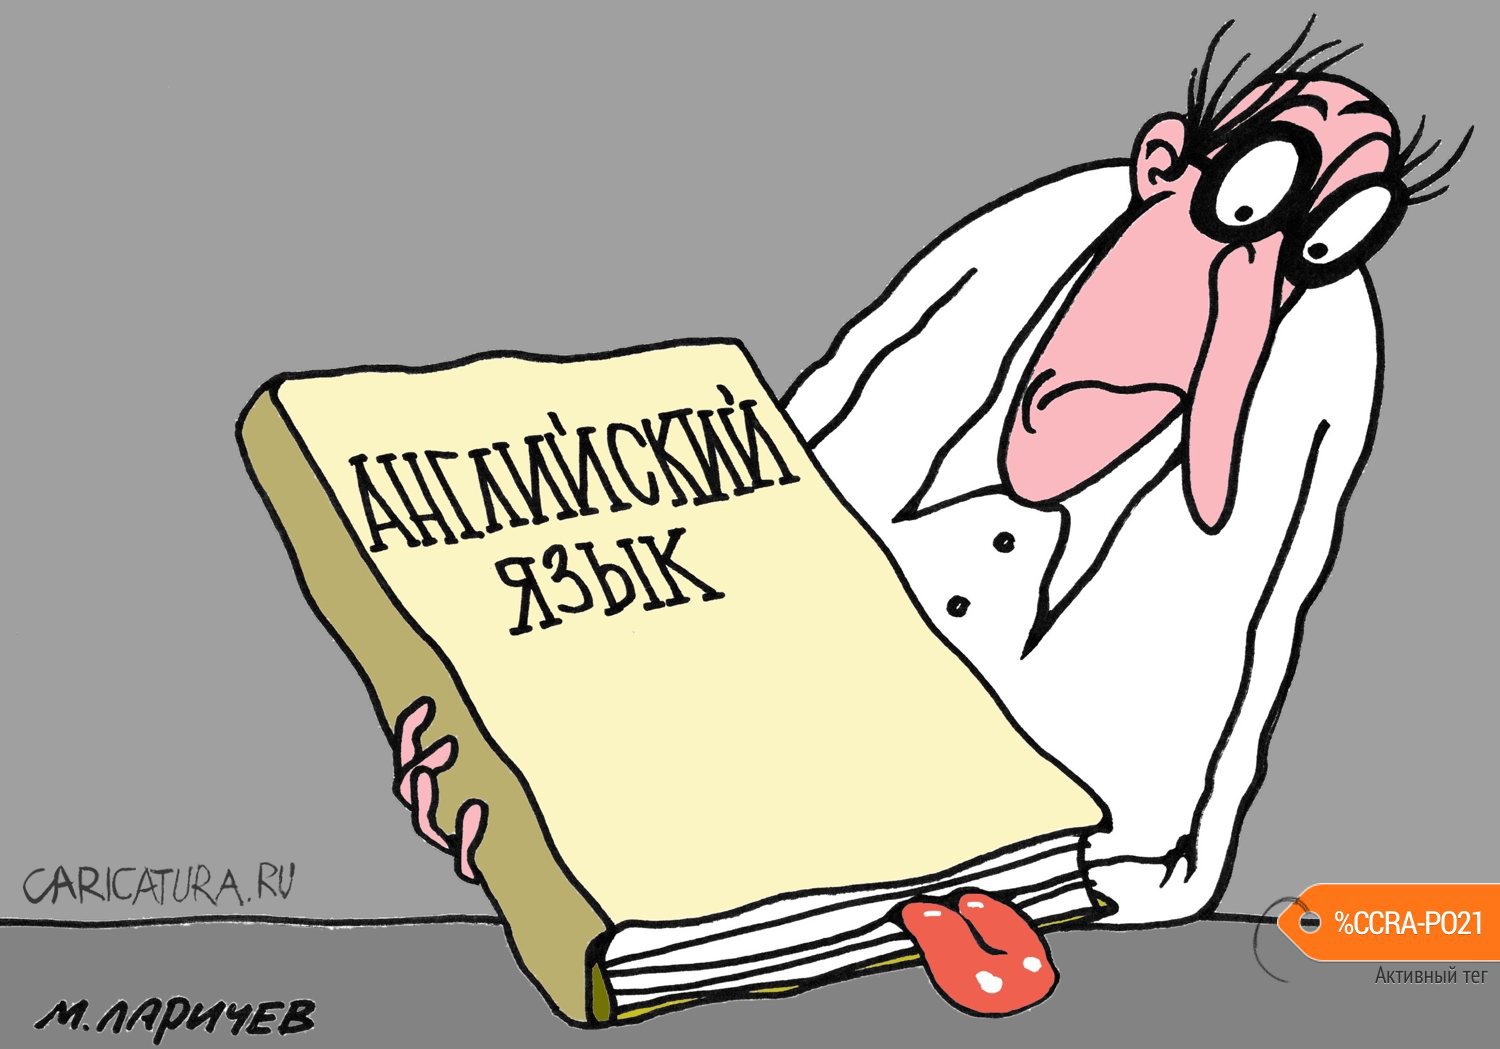 Карикатура "Языковедение", Михаил Ларичев